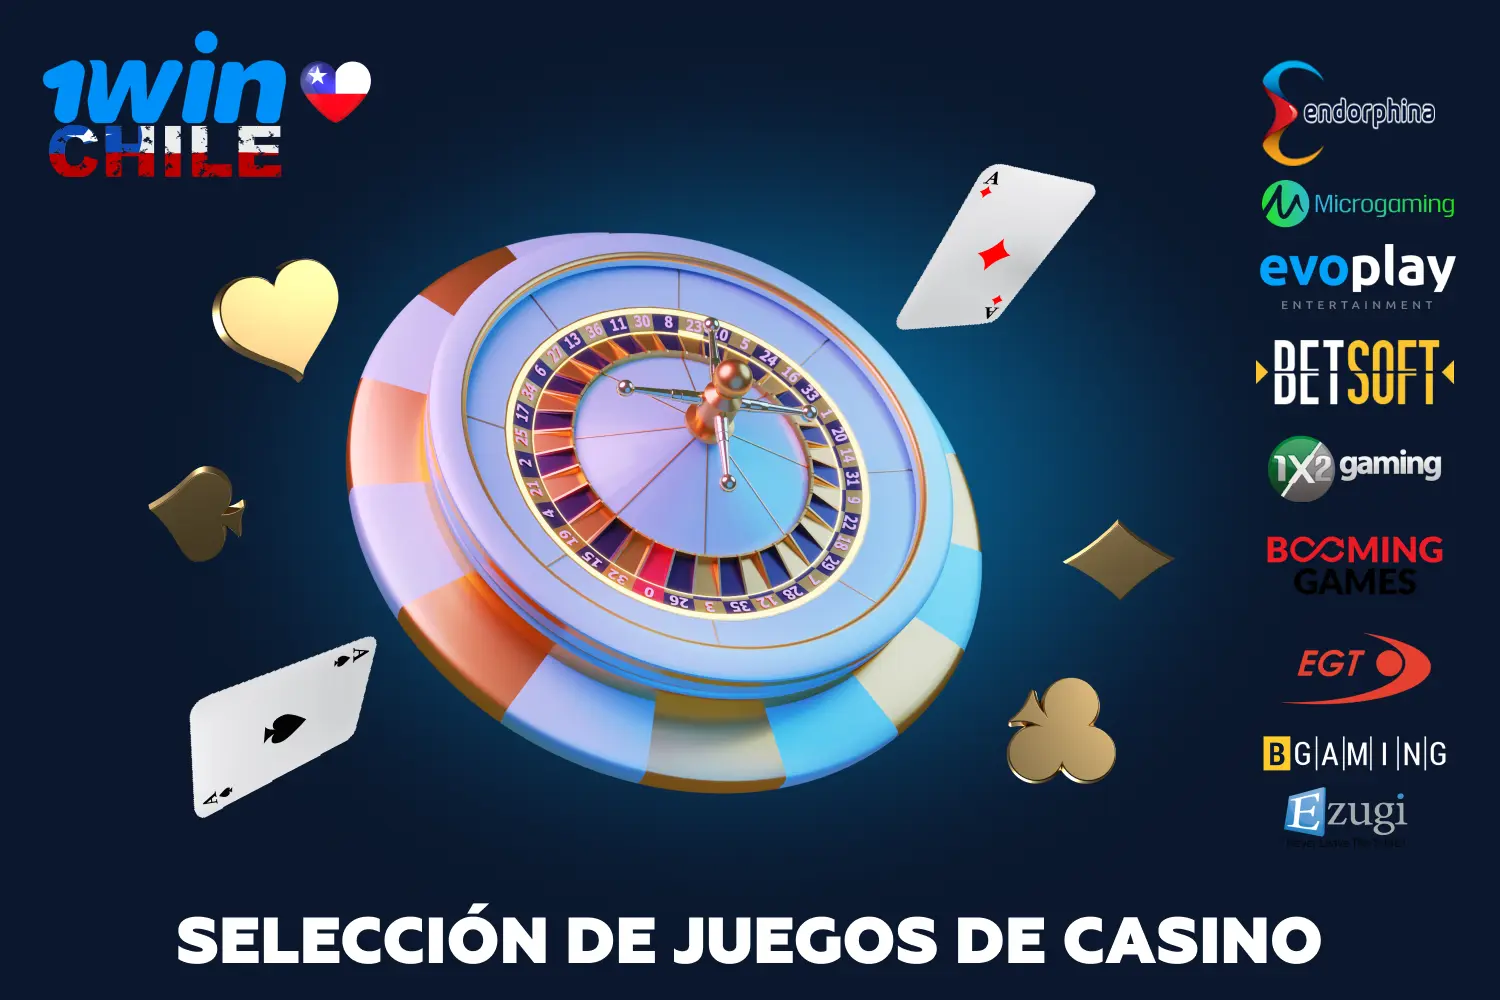 1win Casino ofrece un gran número de juegos de alta calidad de proveedores de renombre para jugadores de Chile